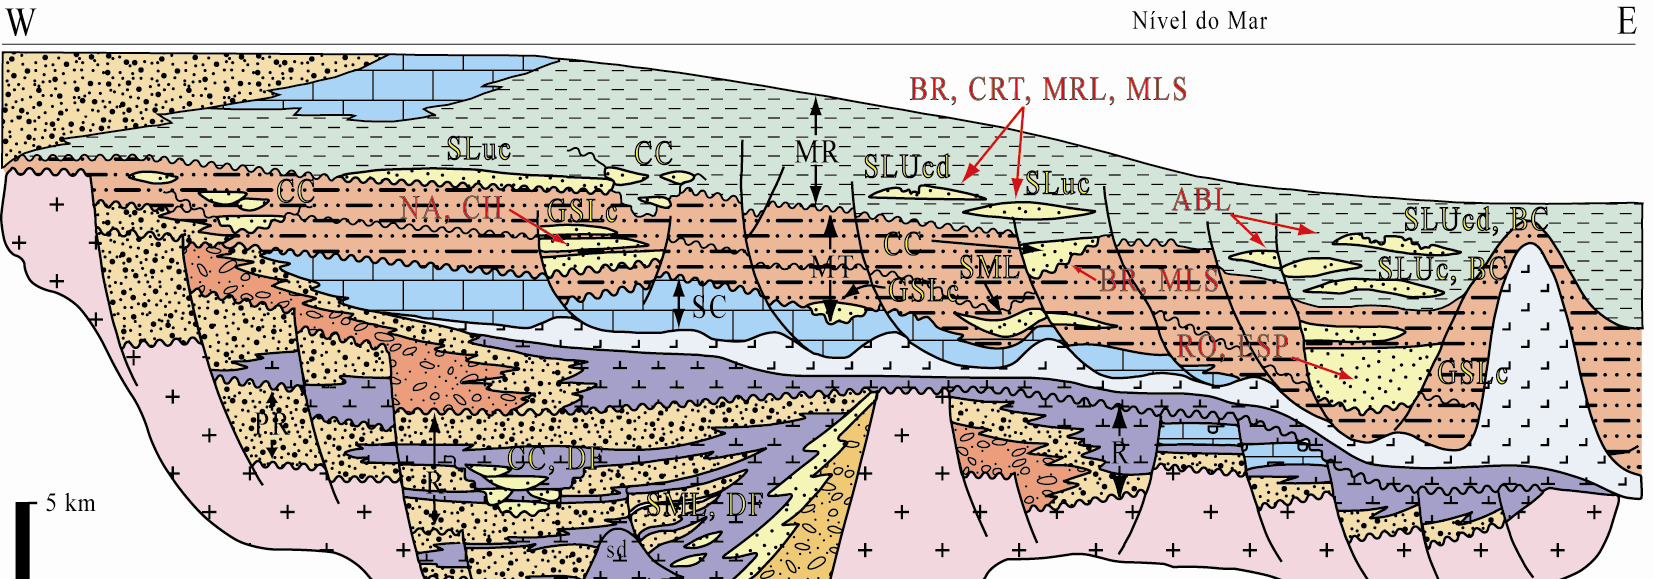 Barboza et al. 131 Atualmente, reconhece-se que desde o final do Jurássico até os dias de hoje a margem leste brasileira pode ser subdividida em seis megaseqüências deposicionais (Fig.